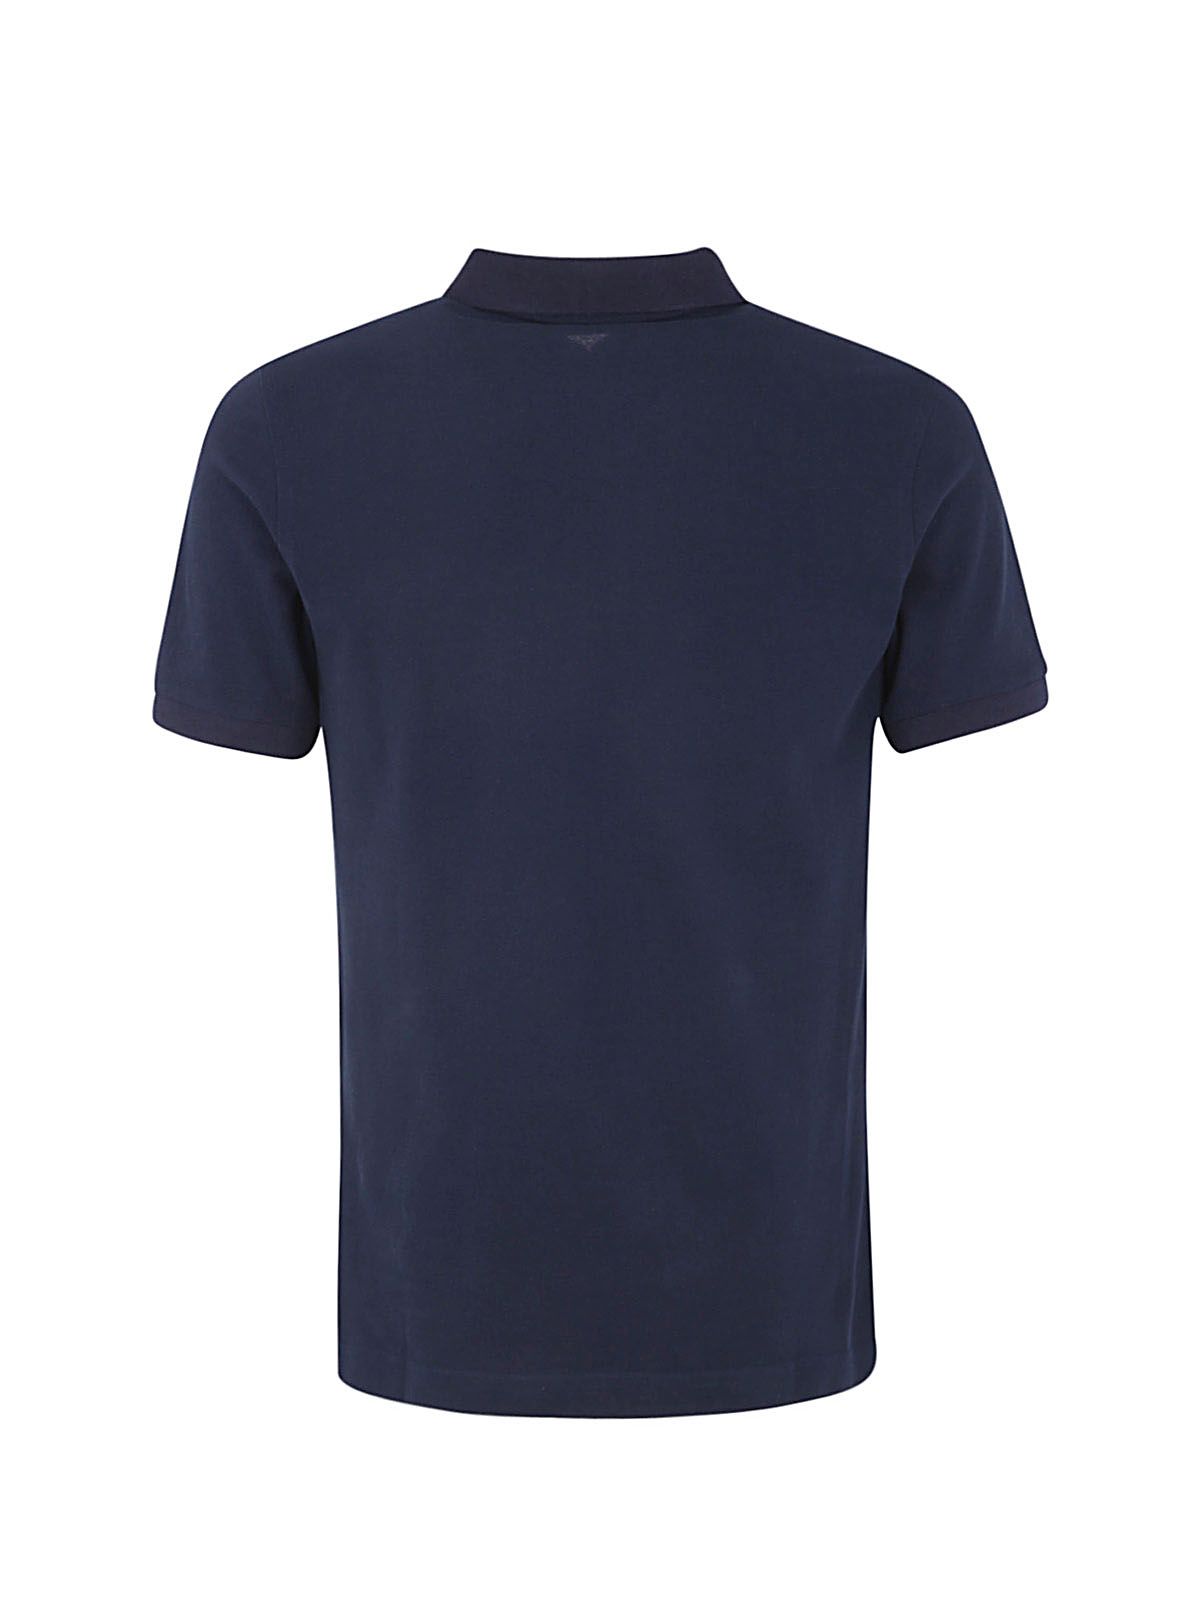 Shop Fay Men's Tshirt - Cotton Polo